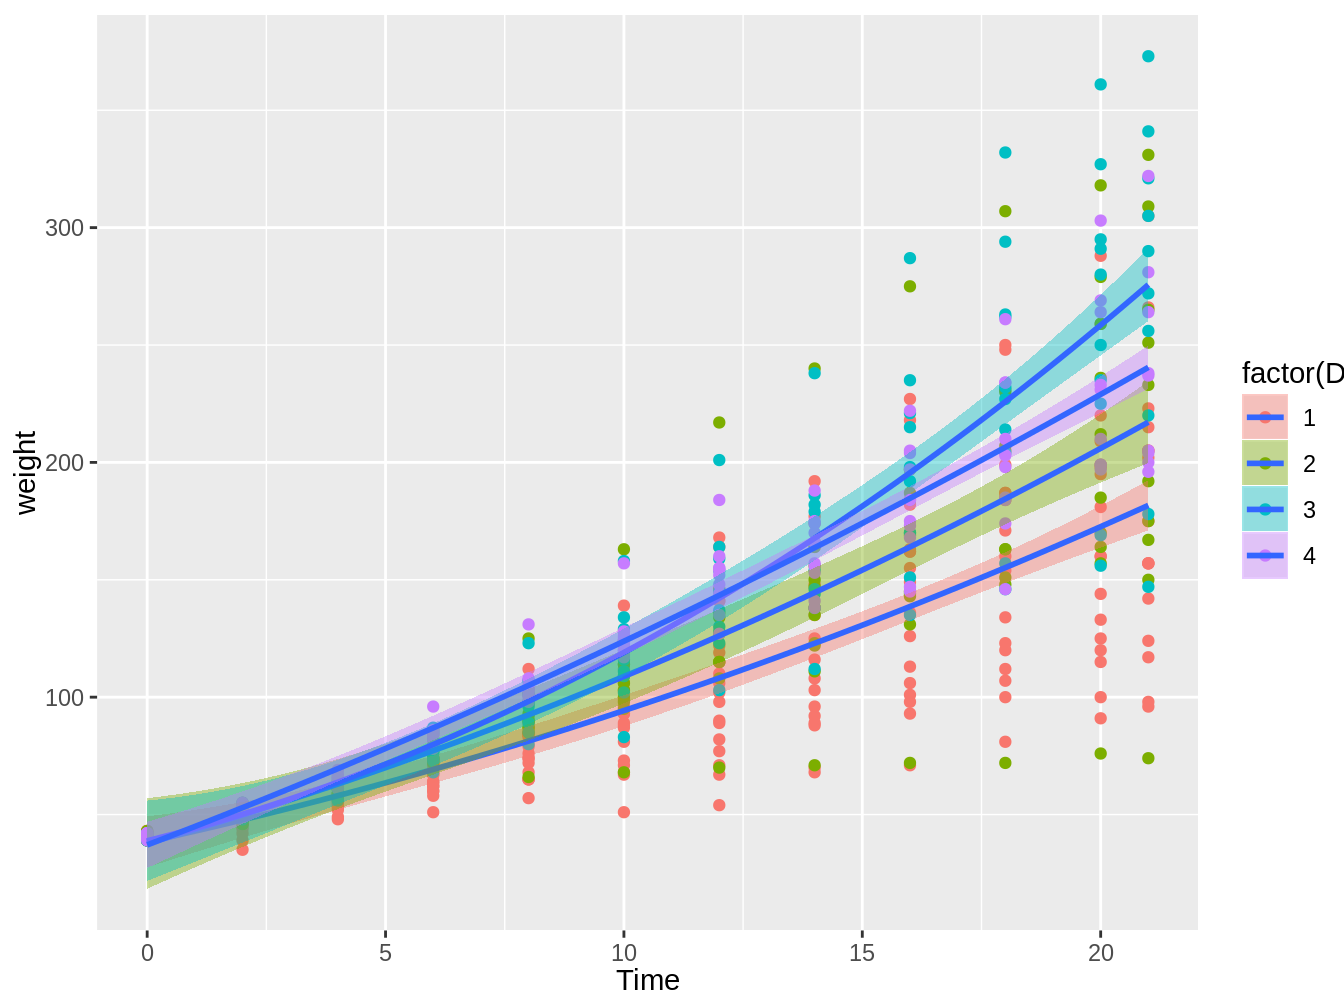 Gráfico en el cual vemos el peso de pollos en el tiempo, con colores distintos según el tipo de dieta, con líneas de tendencia e intervalos de confianza basados en modelos lineales con una relación cuadrática